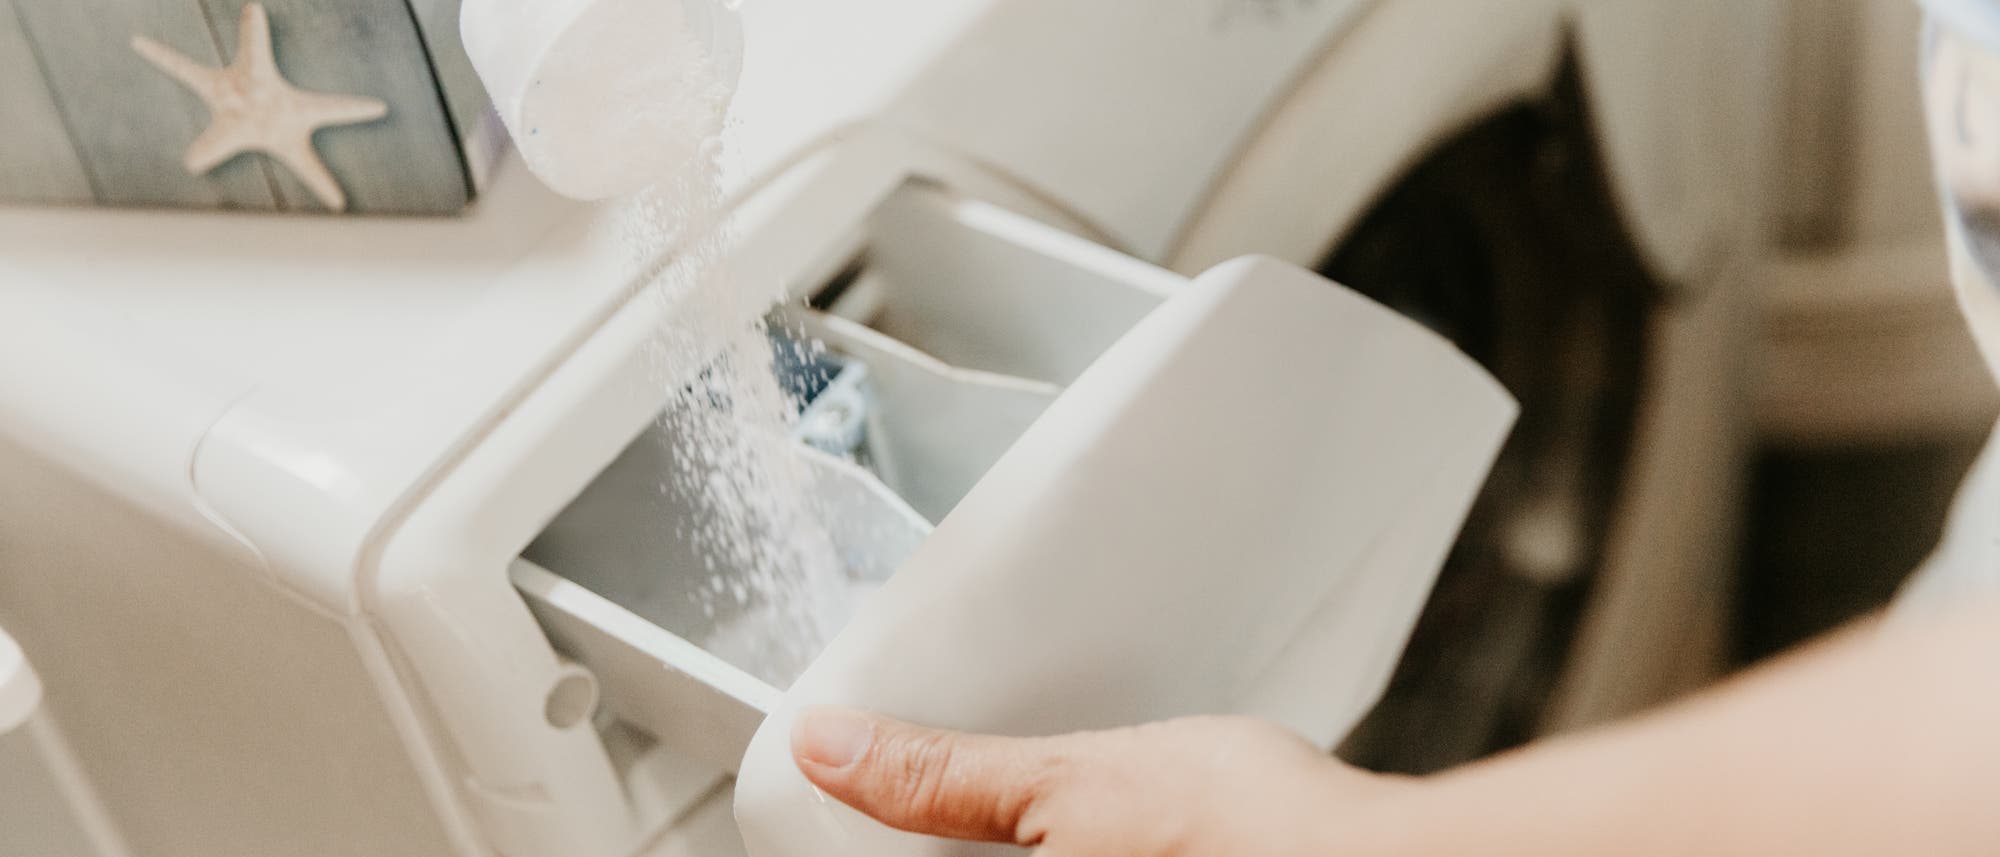 Waschpulver wird ins Waschmittelfach einer Waschmaschine gefüllt.